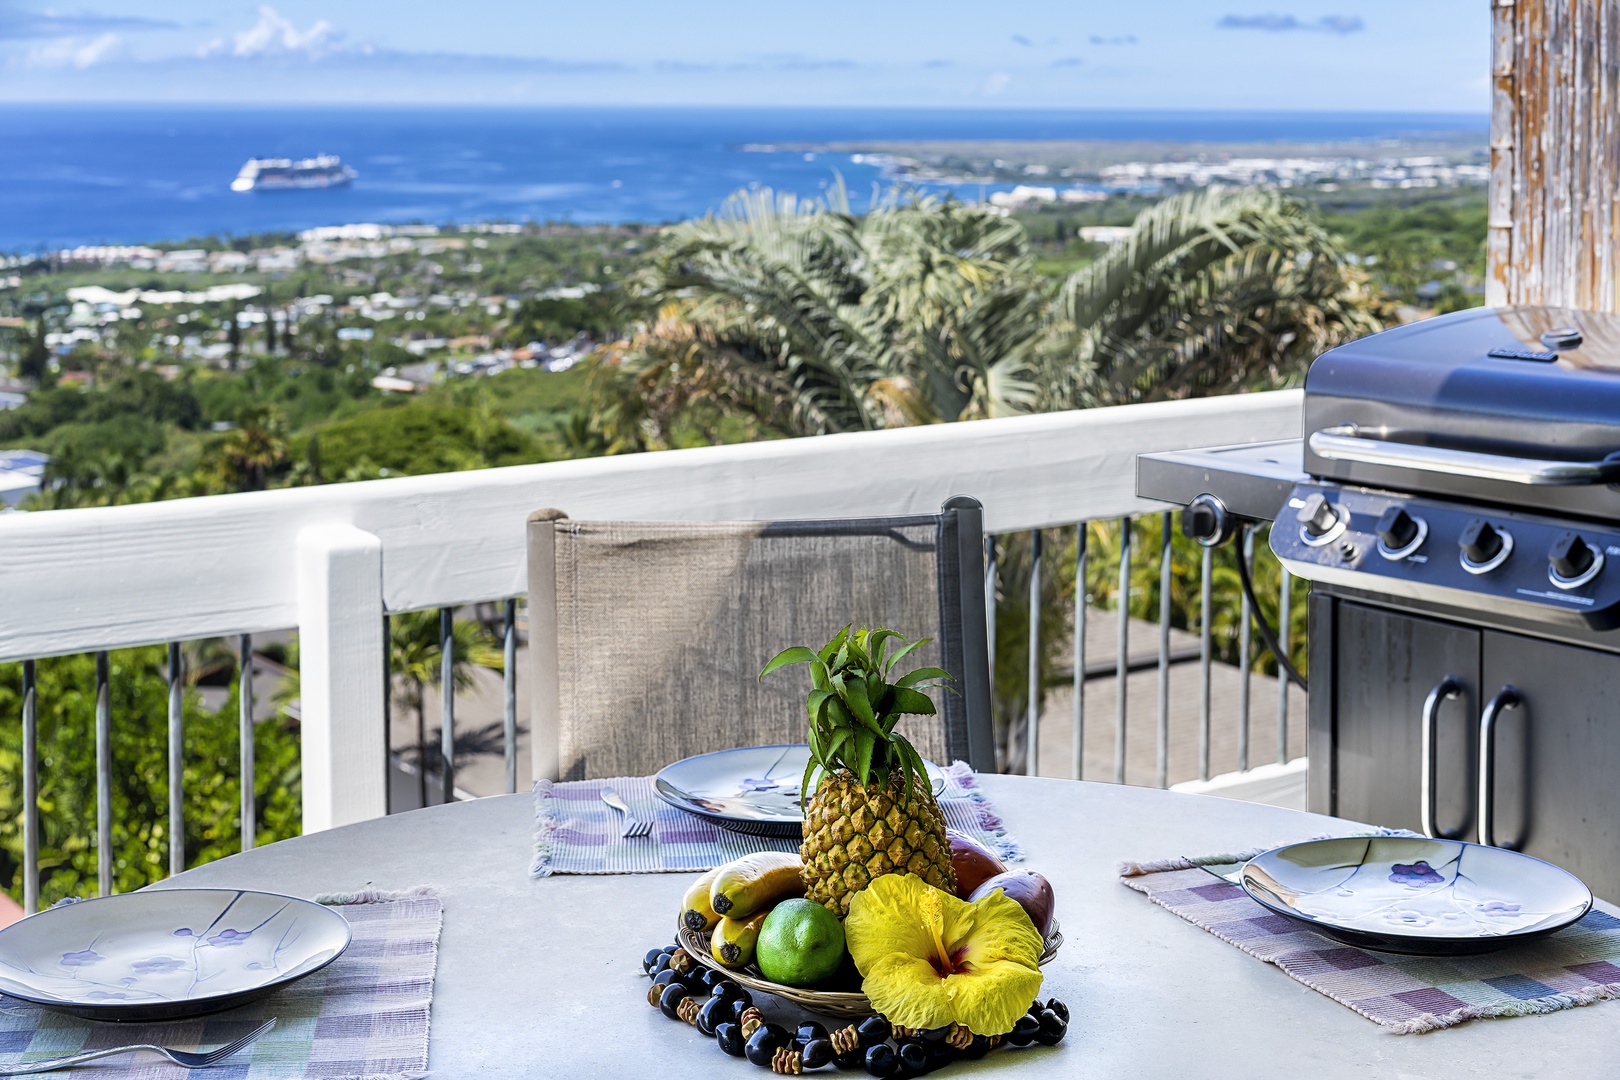 Kailua Kona Vacation Rentals, Ho'o Maluhia - Outdoor dining with 180 degree views!